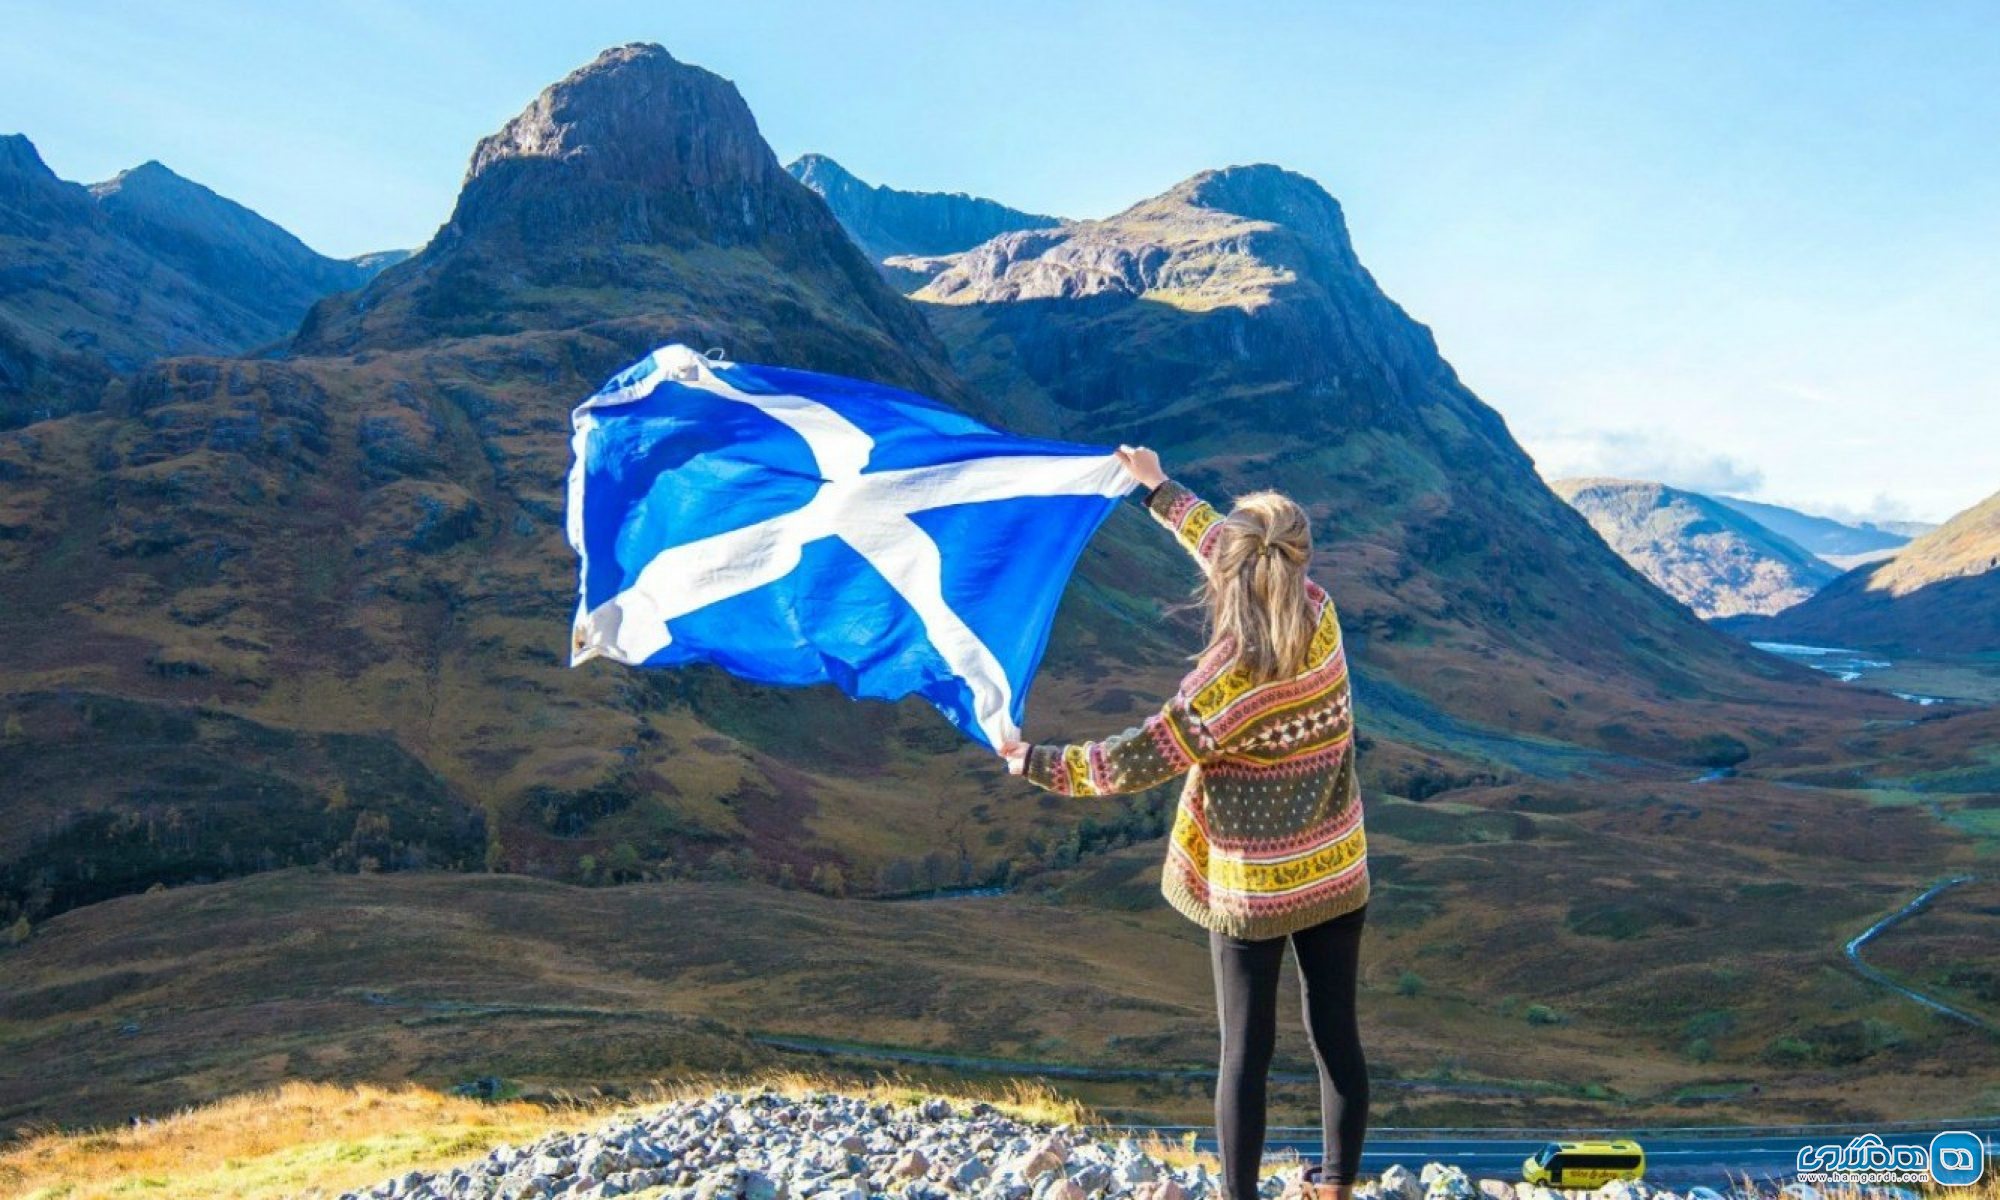 معرفی 9 دانشگاه برتر کشور اسکاتلند در سال 2017